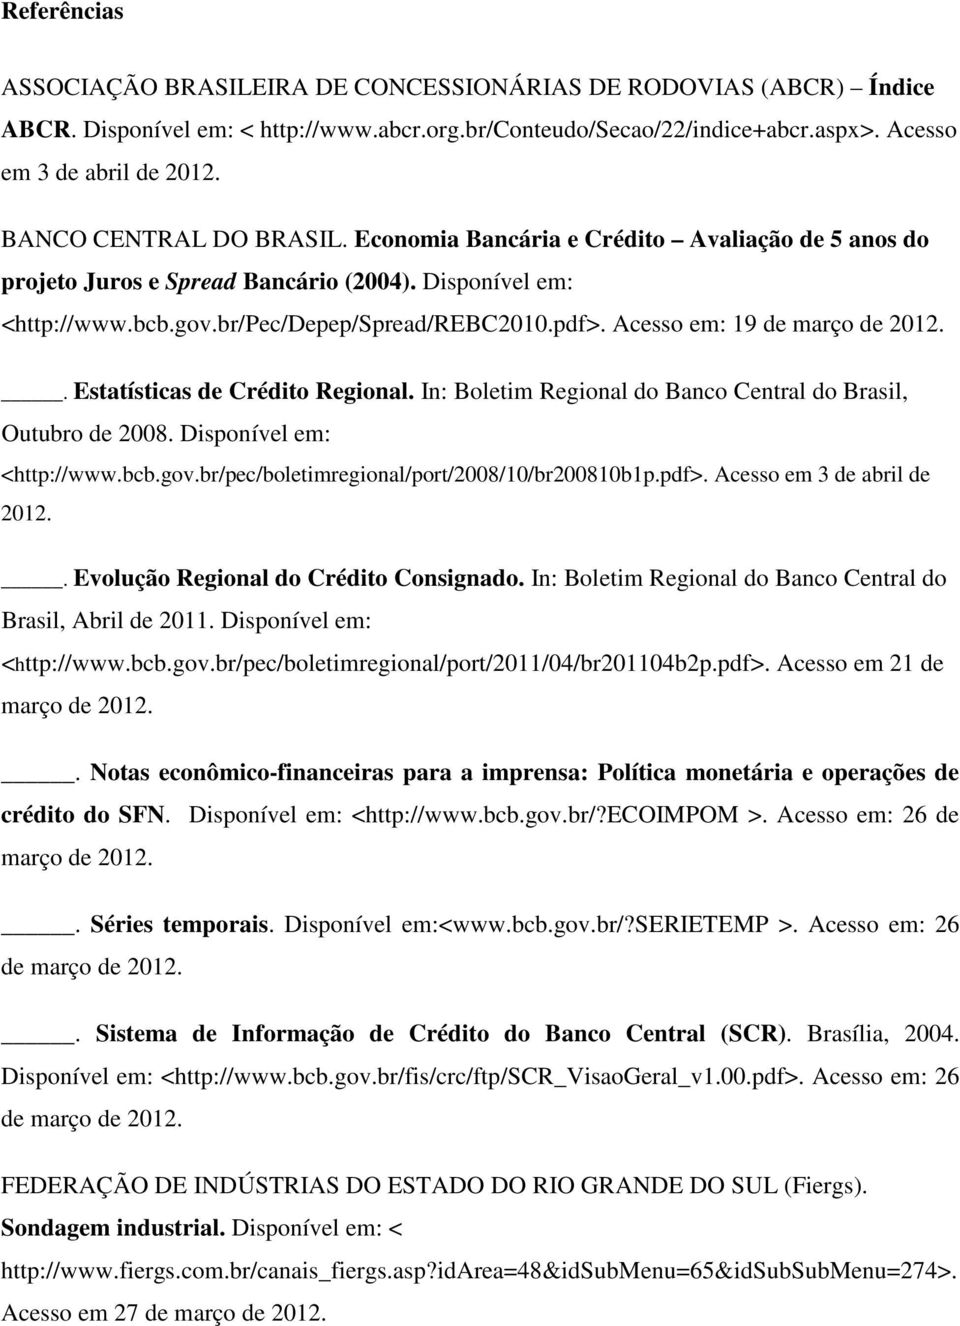 Acesso em: 19 de março de 2012.. Estatísticas de Crédito Regional. In: Boletim Regional do Banco Central do Brasil, Outubro de 2008. Disponível em: <http://www.bcb.gov.